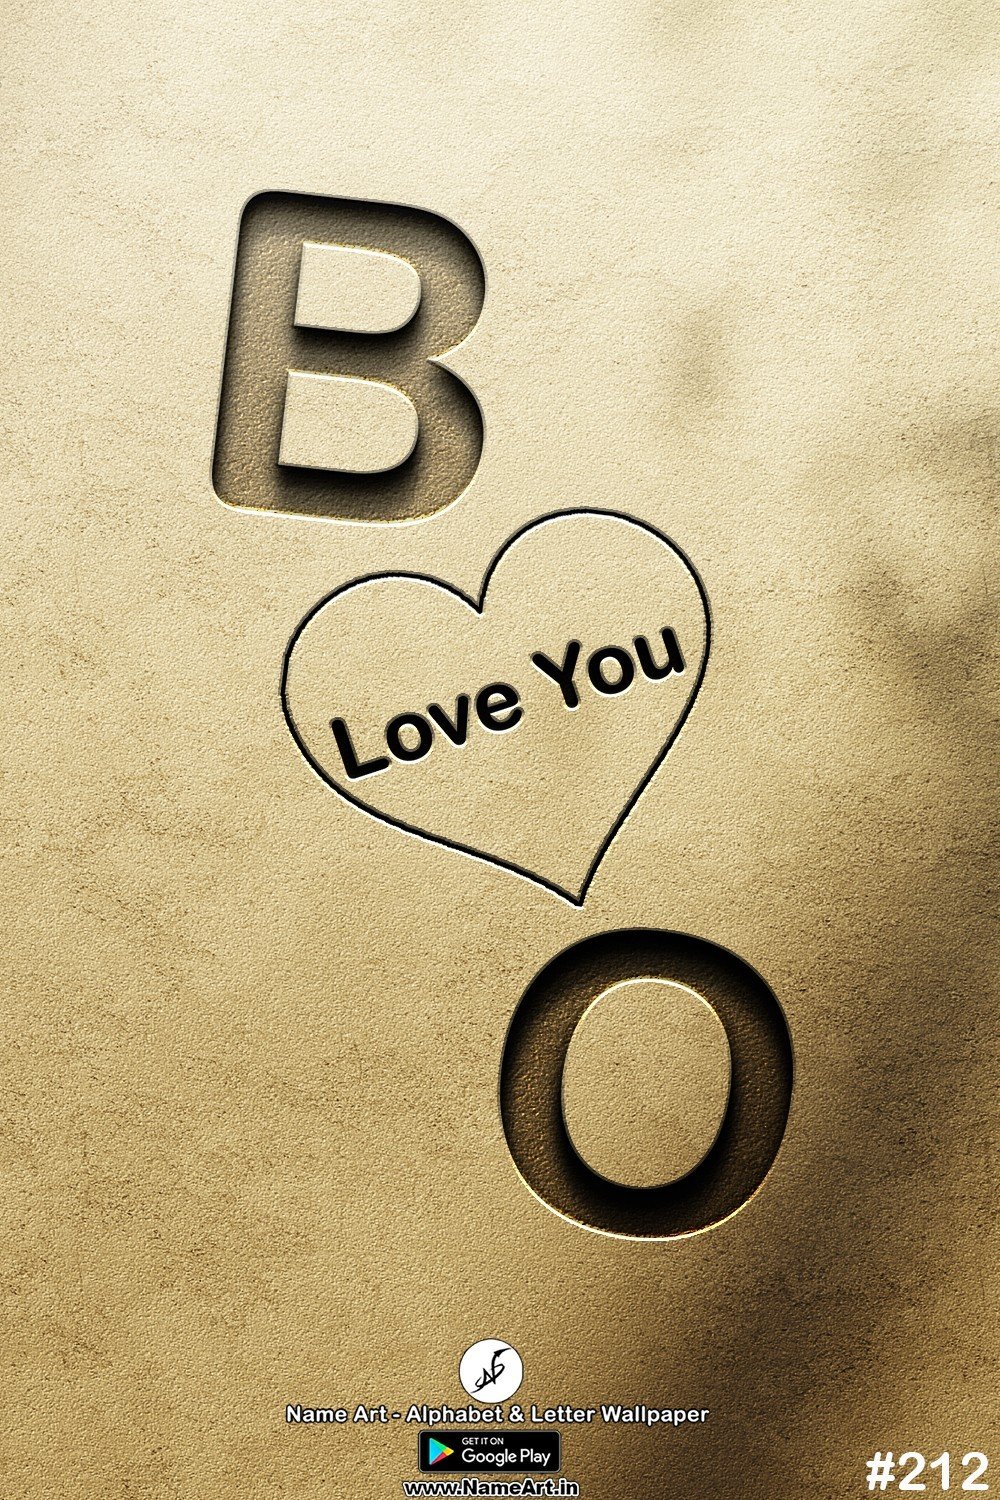 BO | Whatsapp Status DP BO | BO Love Status Cute Couples Whatsapp Status DP !! | New Whatsapp Status DP BO Images |